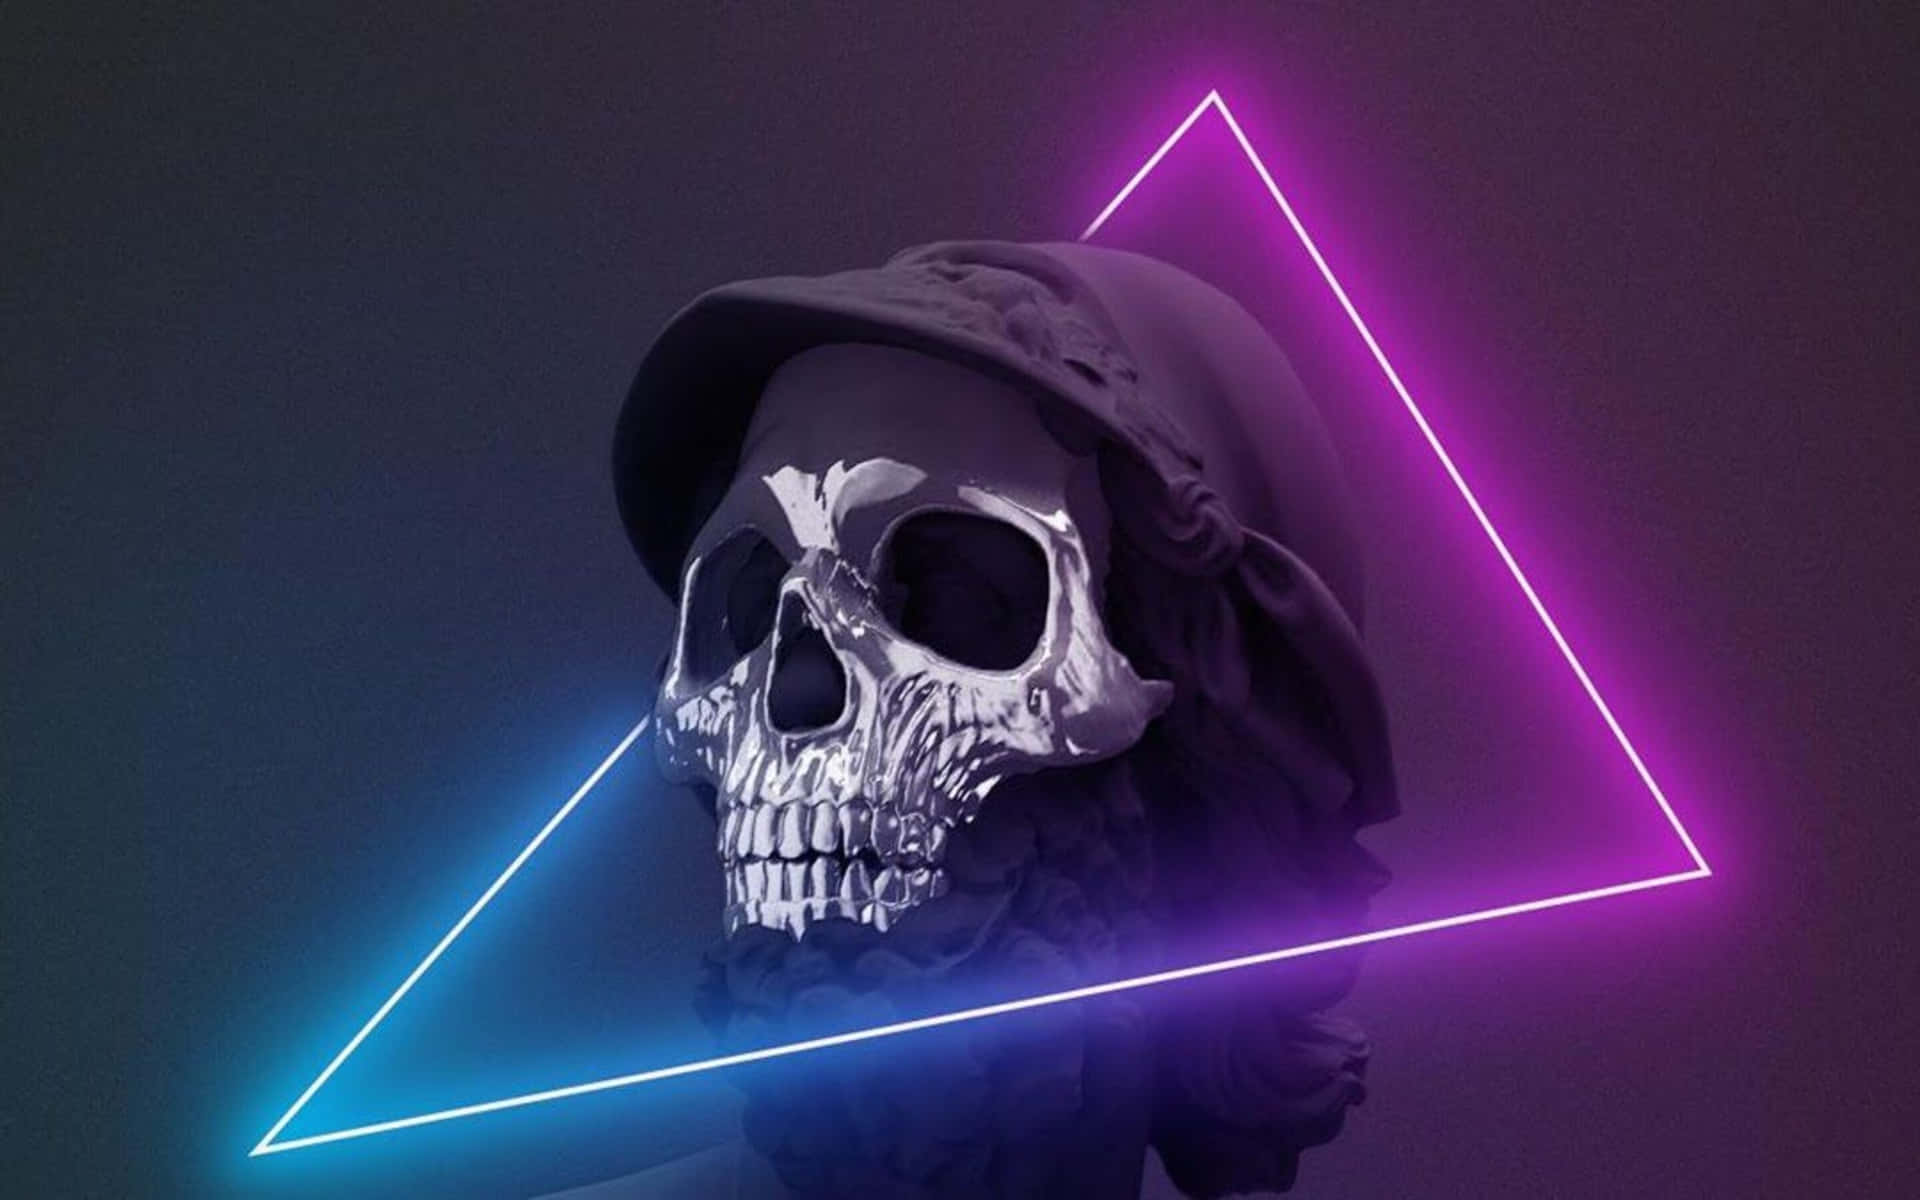 Erövragalaxen Med Purple Skull Trooper! Wallpaper